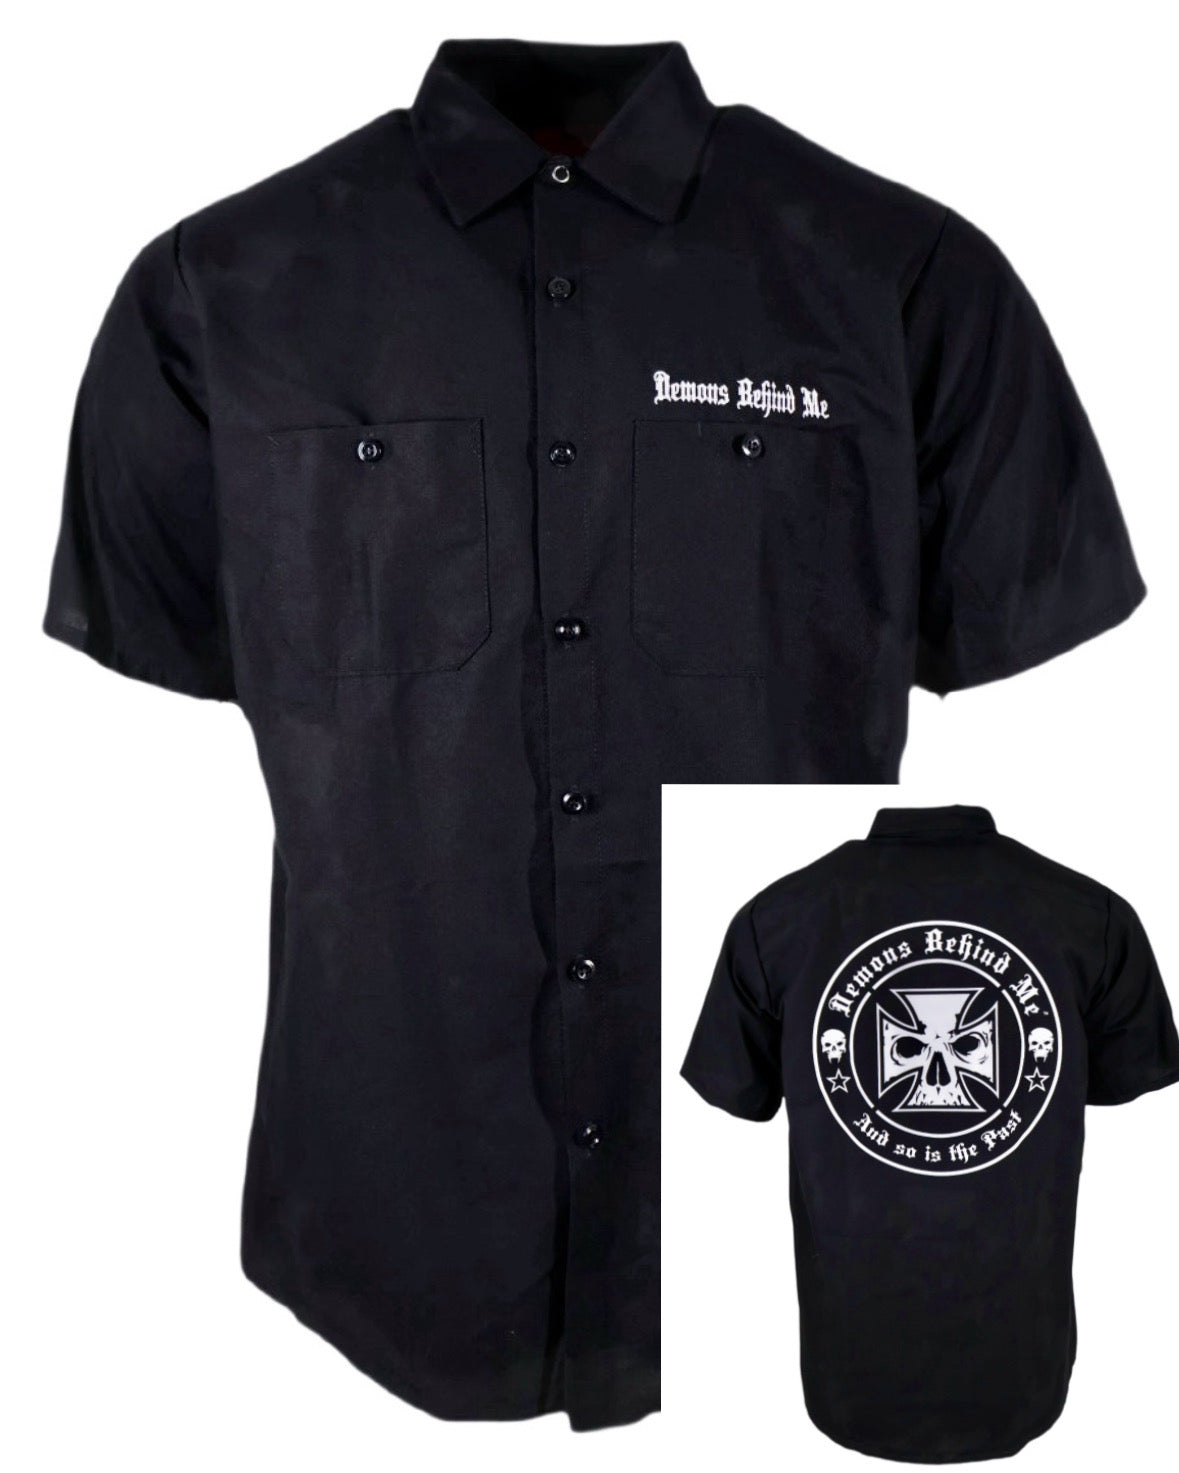 Embroidered Shop Shirt - Men's Short Sleeve Black - White Cross ...